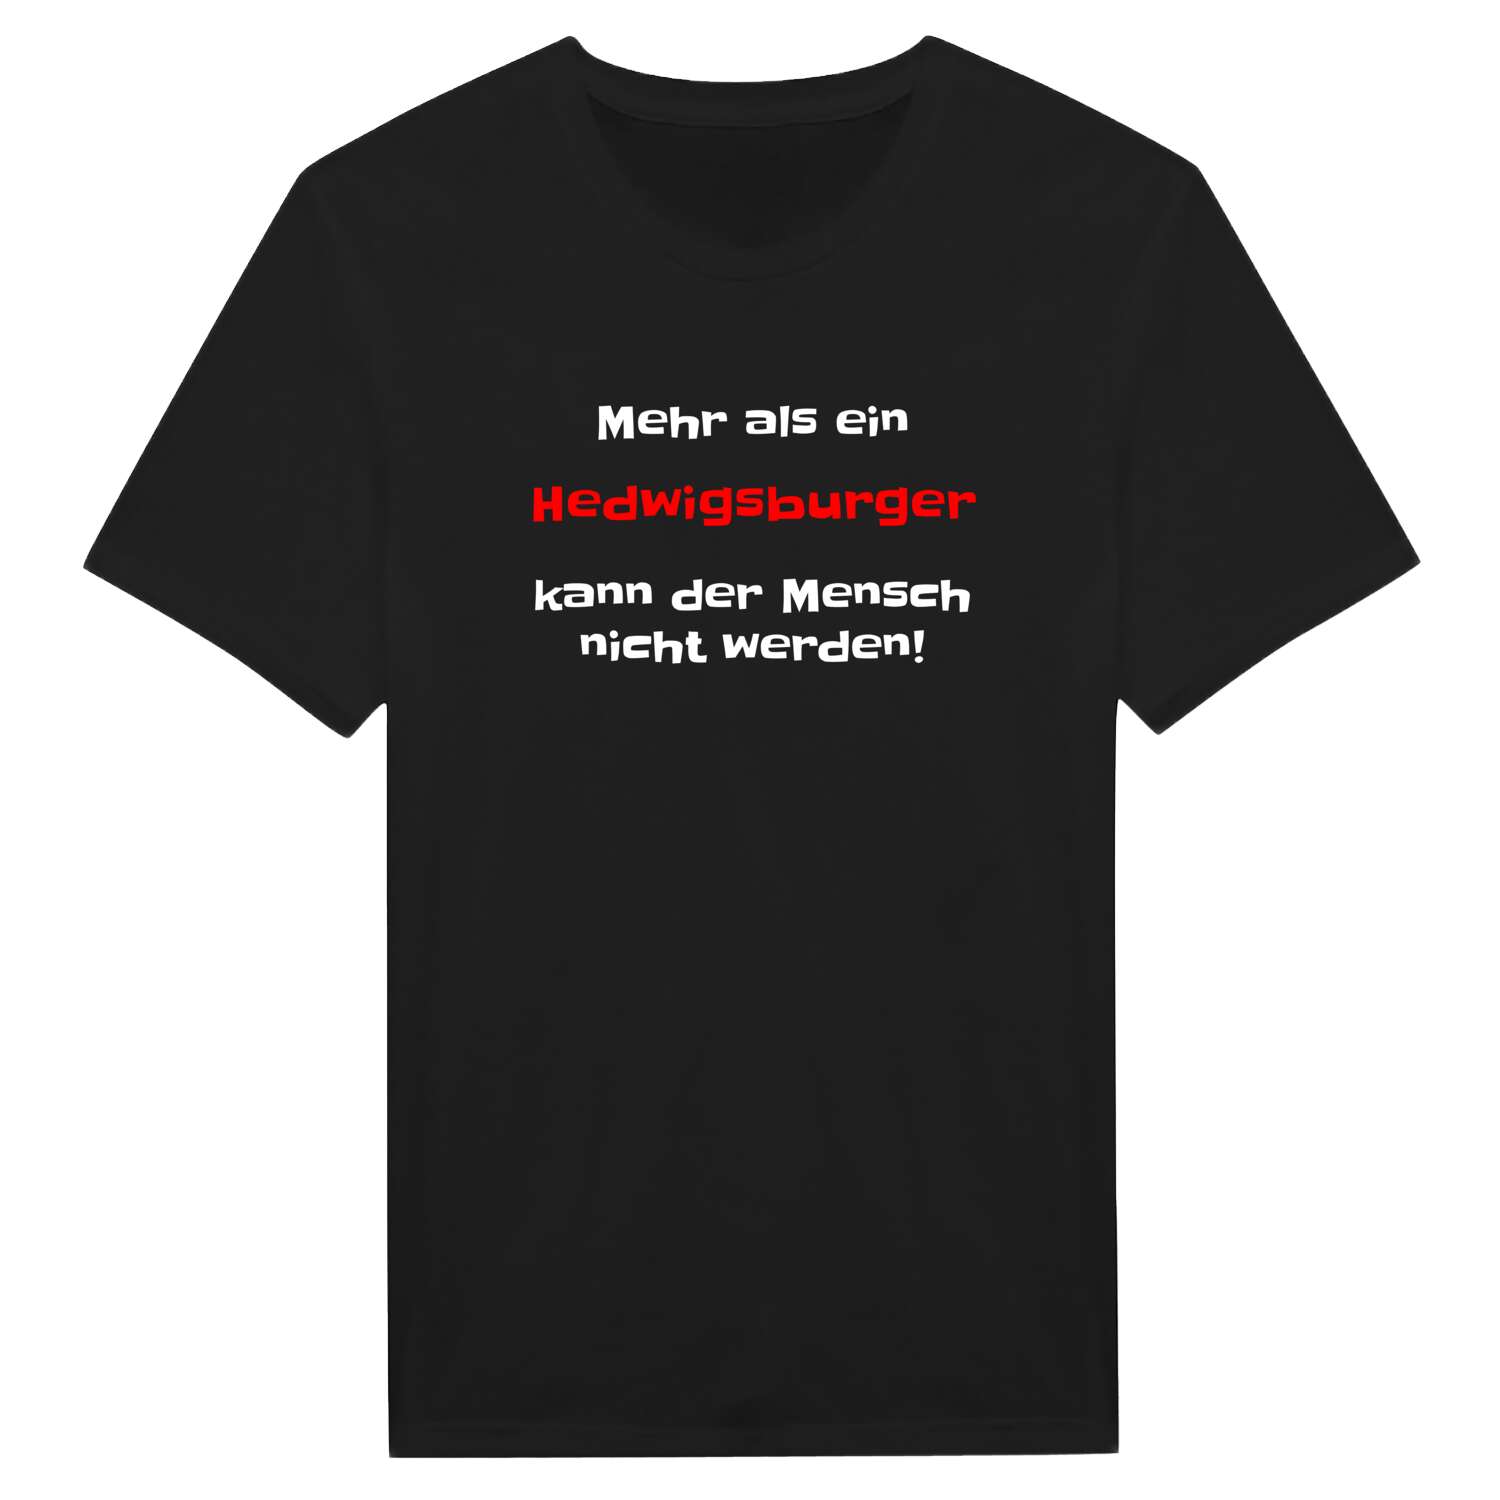 Hedwigsburg T-Shirt »Mehr als ein«